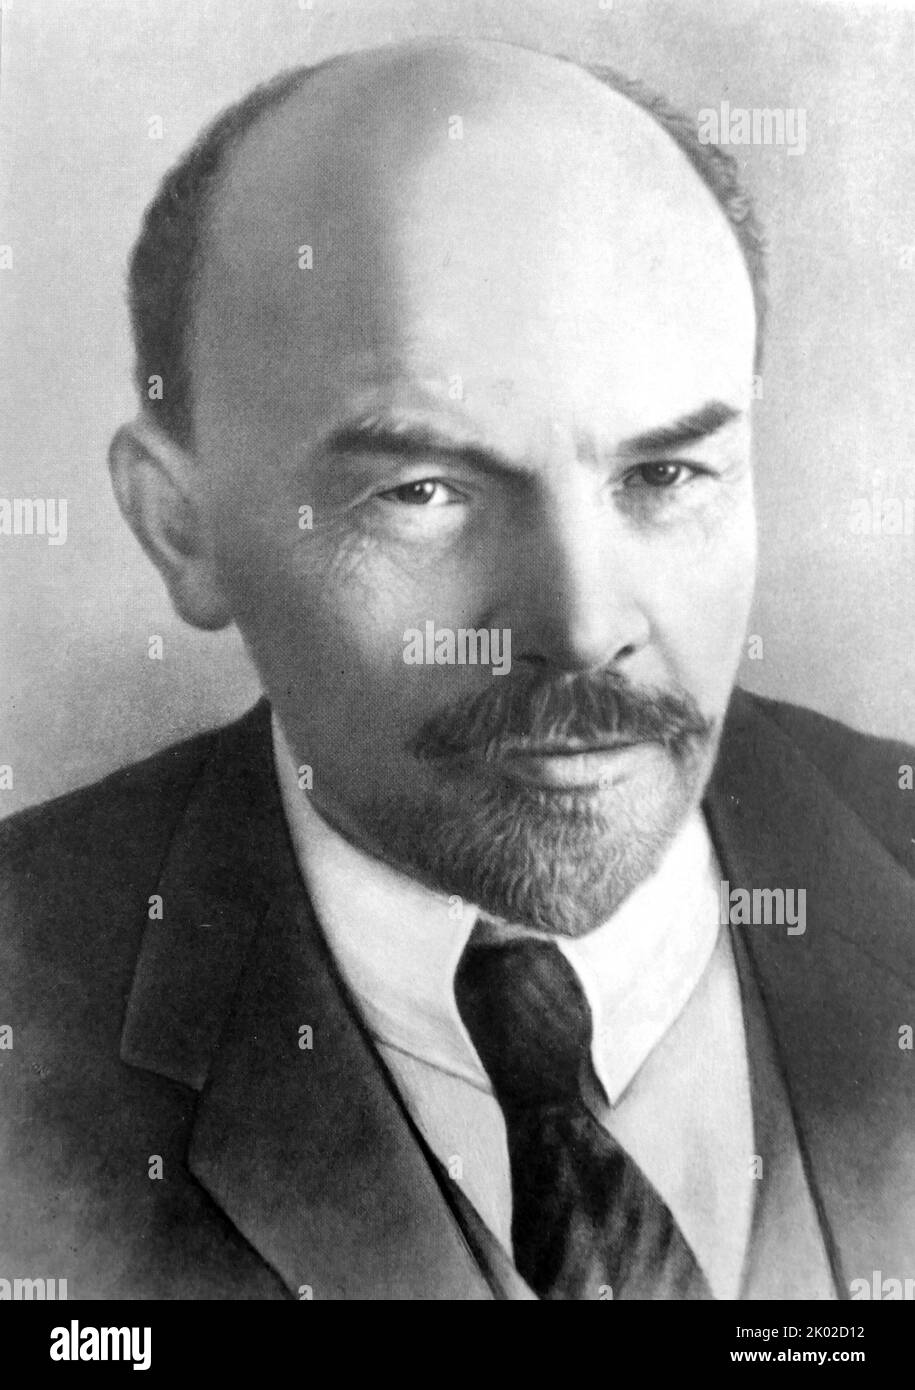 Vladimir Ilyich Ulyanov (1870 - 1924), alias Lenin, rivoluzionario russo, politico e teorico politico. Fu capo di governo della Russia sovietica dal 1917 al 1924 e dell'Unione sovietica dal 1922 al 1924. Foto Stock